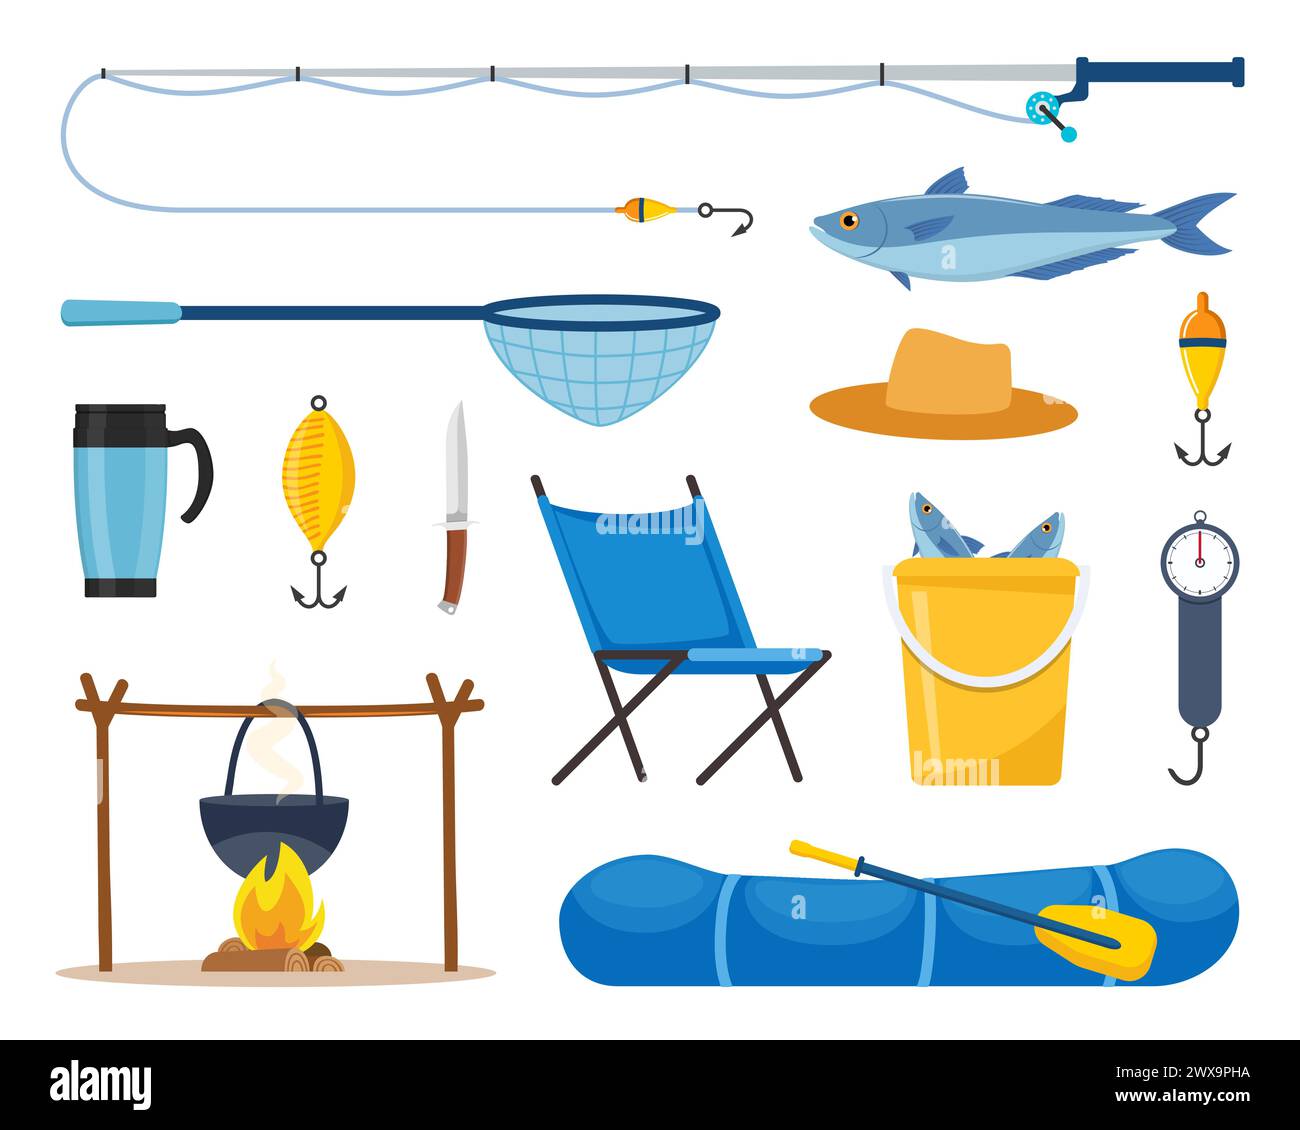 Equipos y herramientas para la pesca. Caña de pescar, flotador, barco de goma inflable, red de aterrizaje, ropa de los pescadores, gancho, pescado, sombrero, linterna, botas. Al aire libre Ilustración del Vector